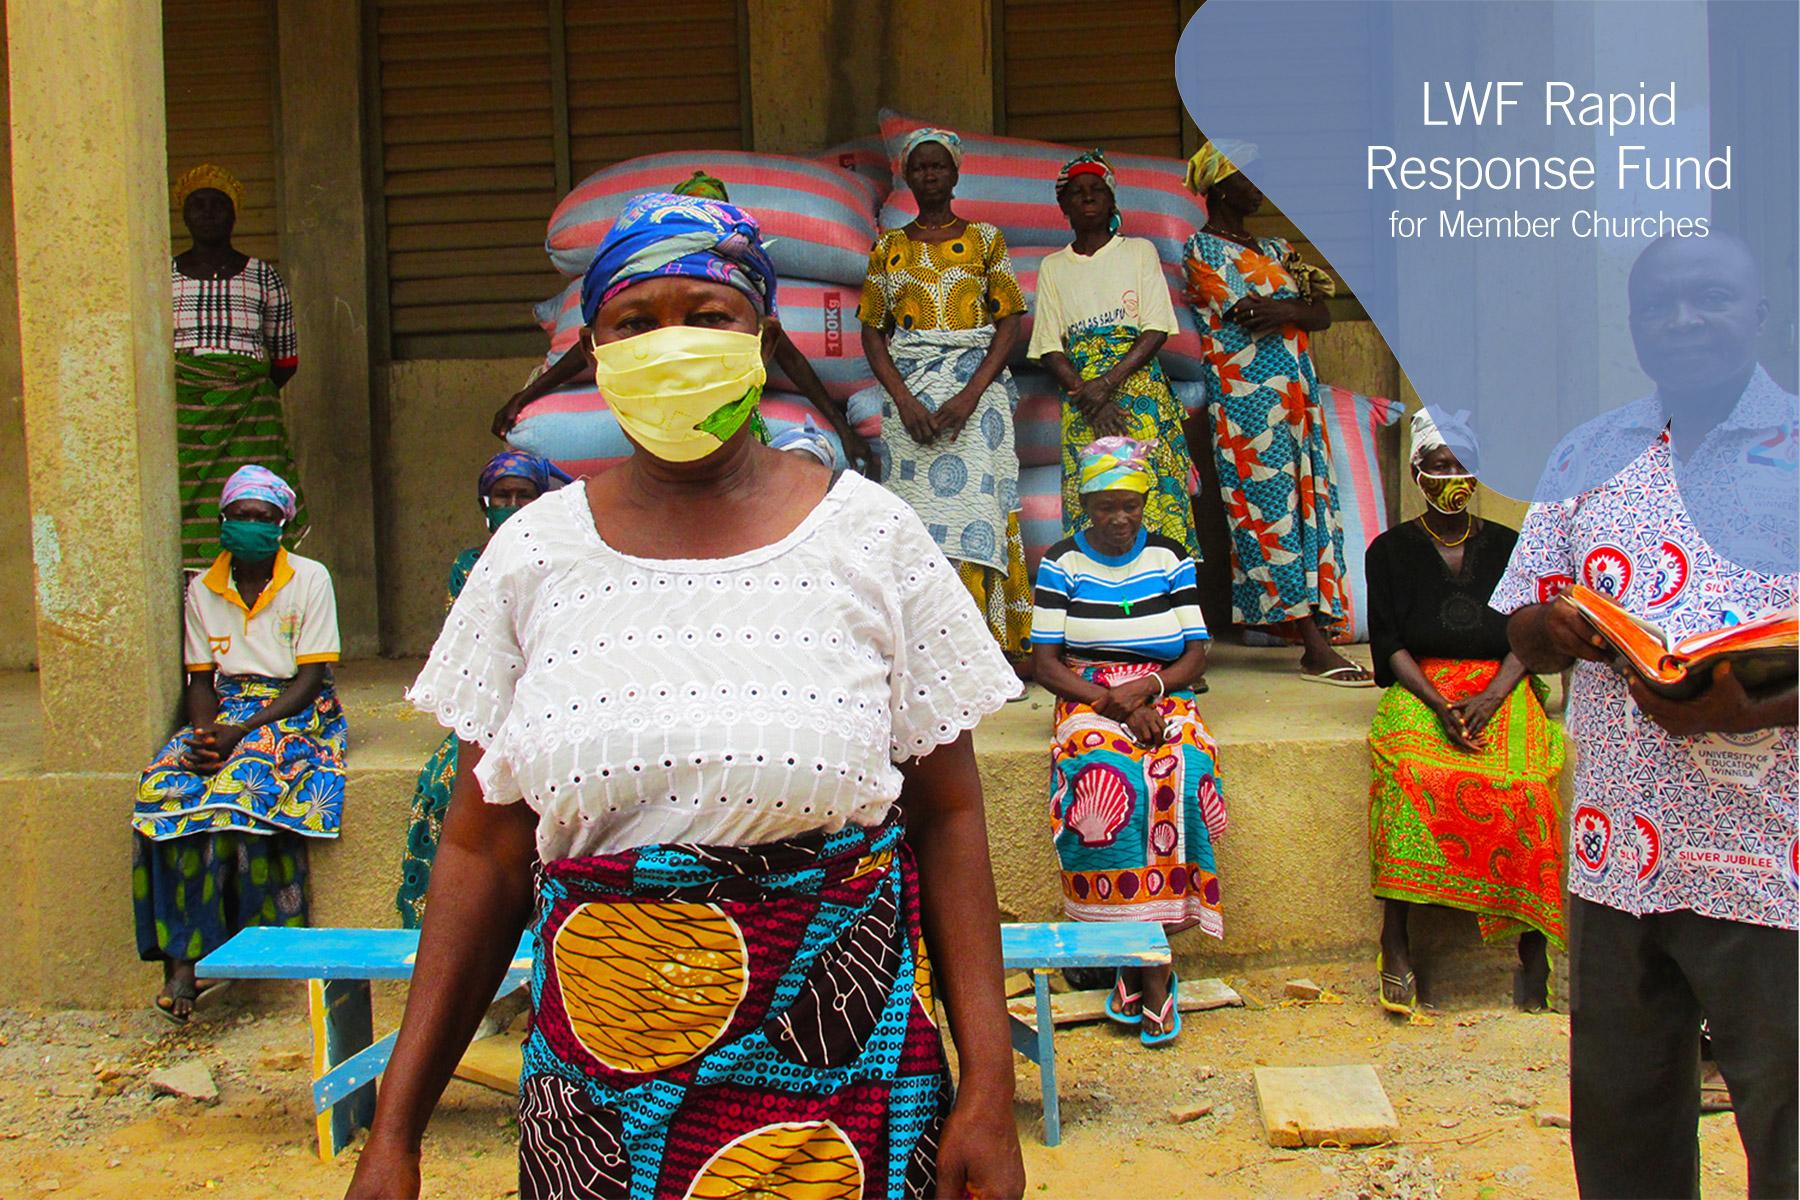 Martha Abugri, Mitglied der Grace Lutheran Church in Narango in der Upper East Region, gehört zu den dreizehn Witwen, die Hilfen erhielten. Foto: ELCG/Prosper Atiiga